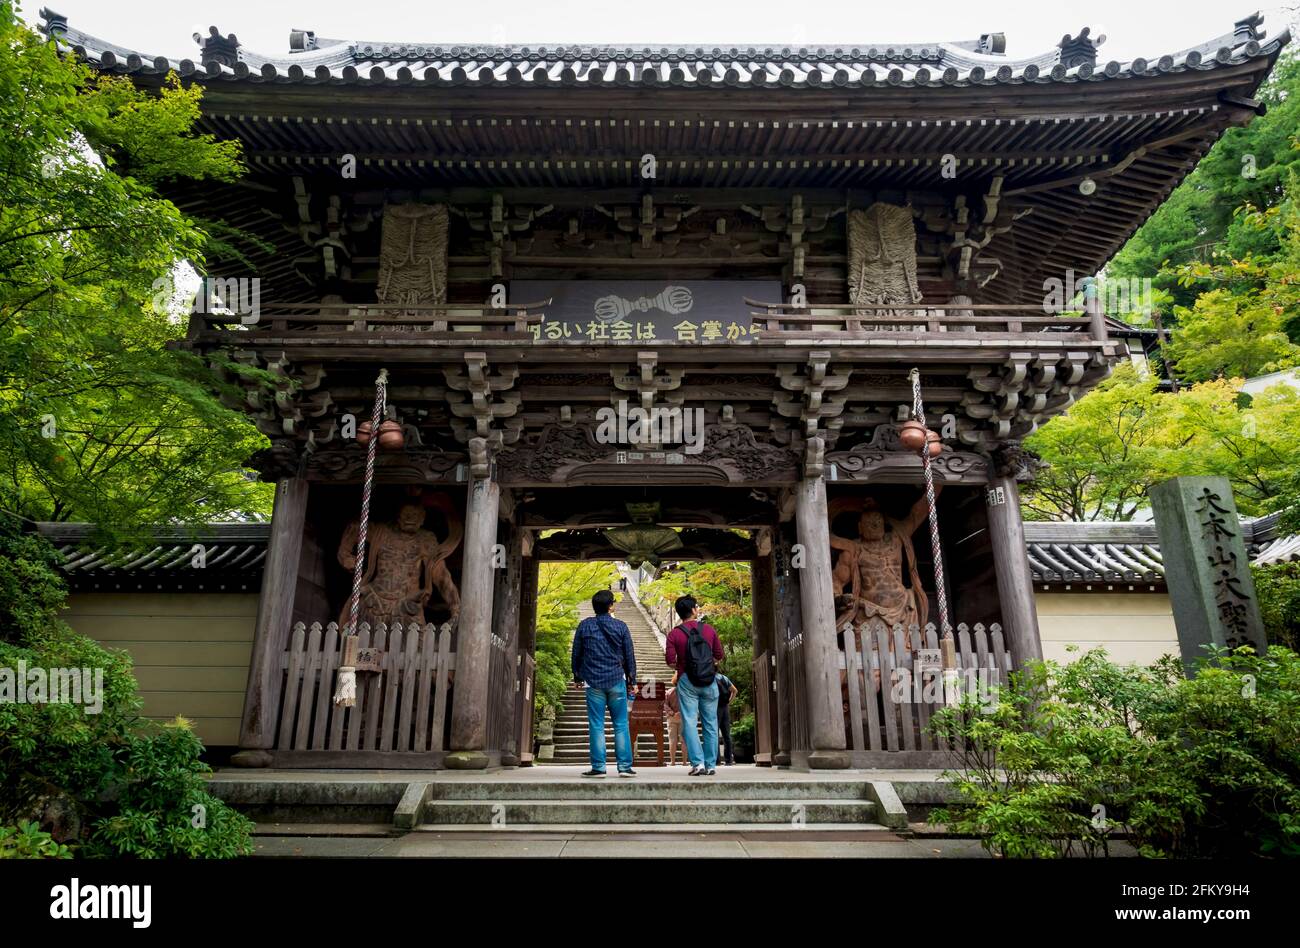 Miyajima, Hiroshima, Giappone - 15 settembre 2017: I visitatori che guardano l'ingresso del cancello con le statue dei re nio come guardie nell'edificio in legno di Daish Foto Stock